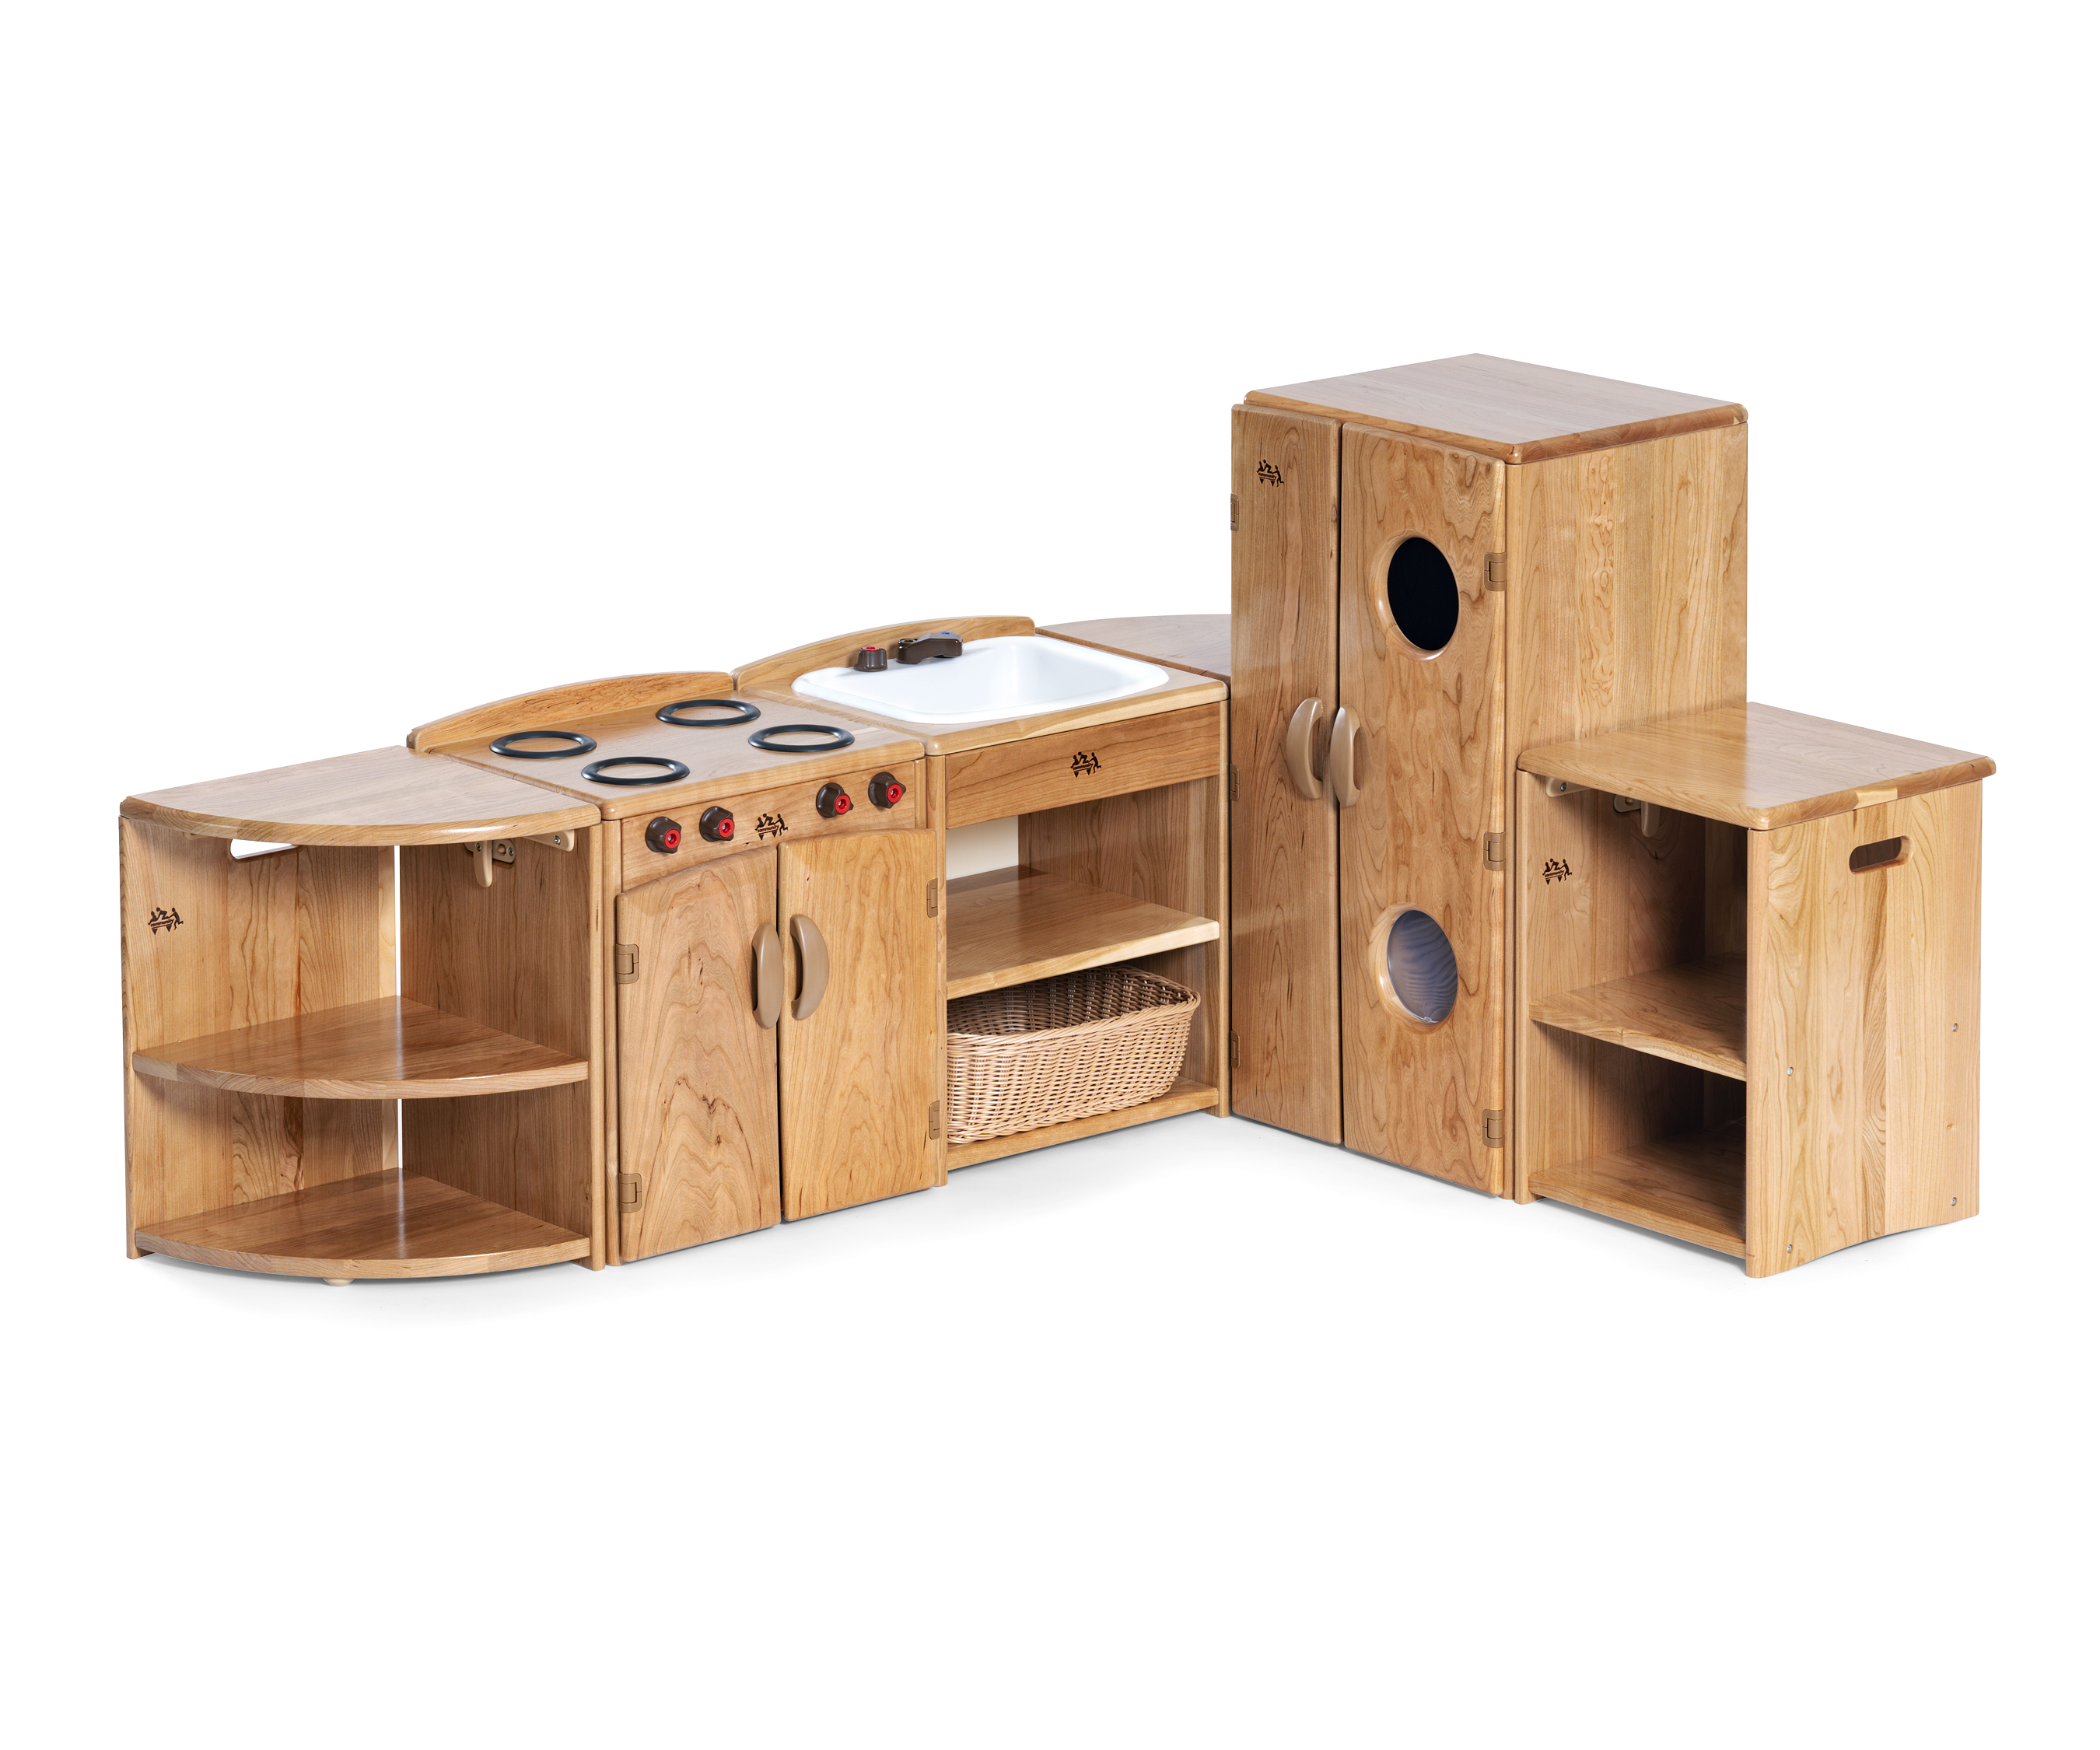 Wooden kitchen, Montessori style play corner